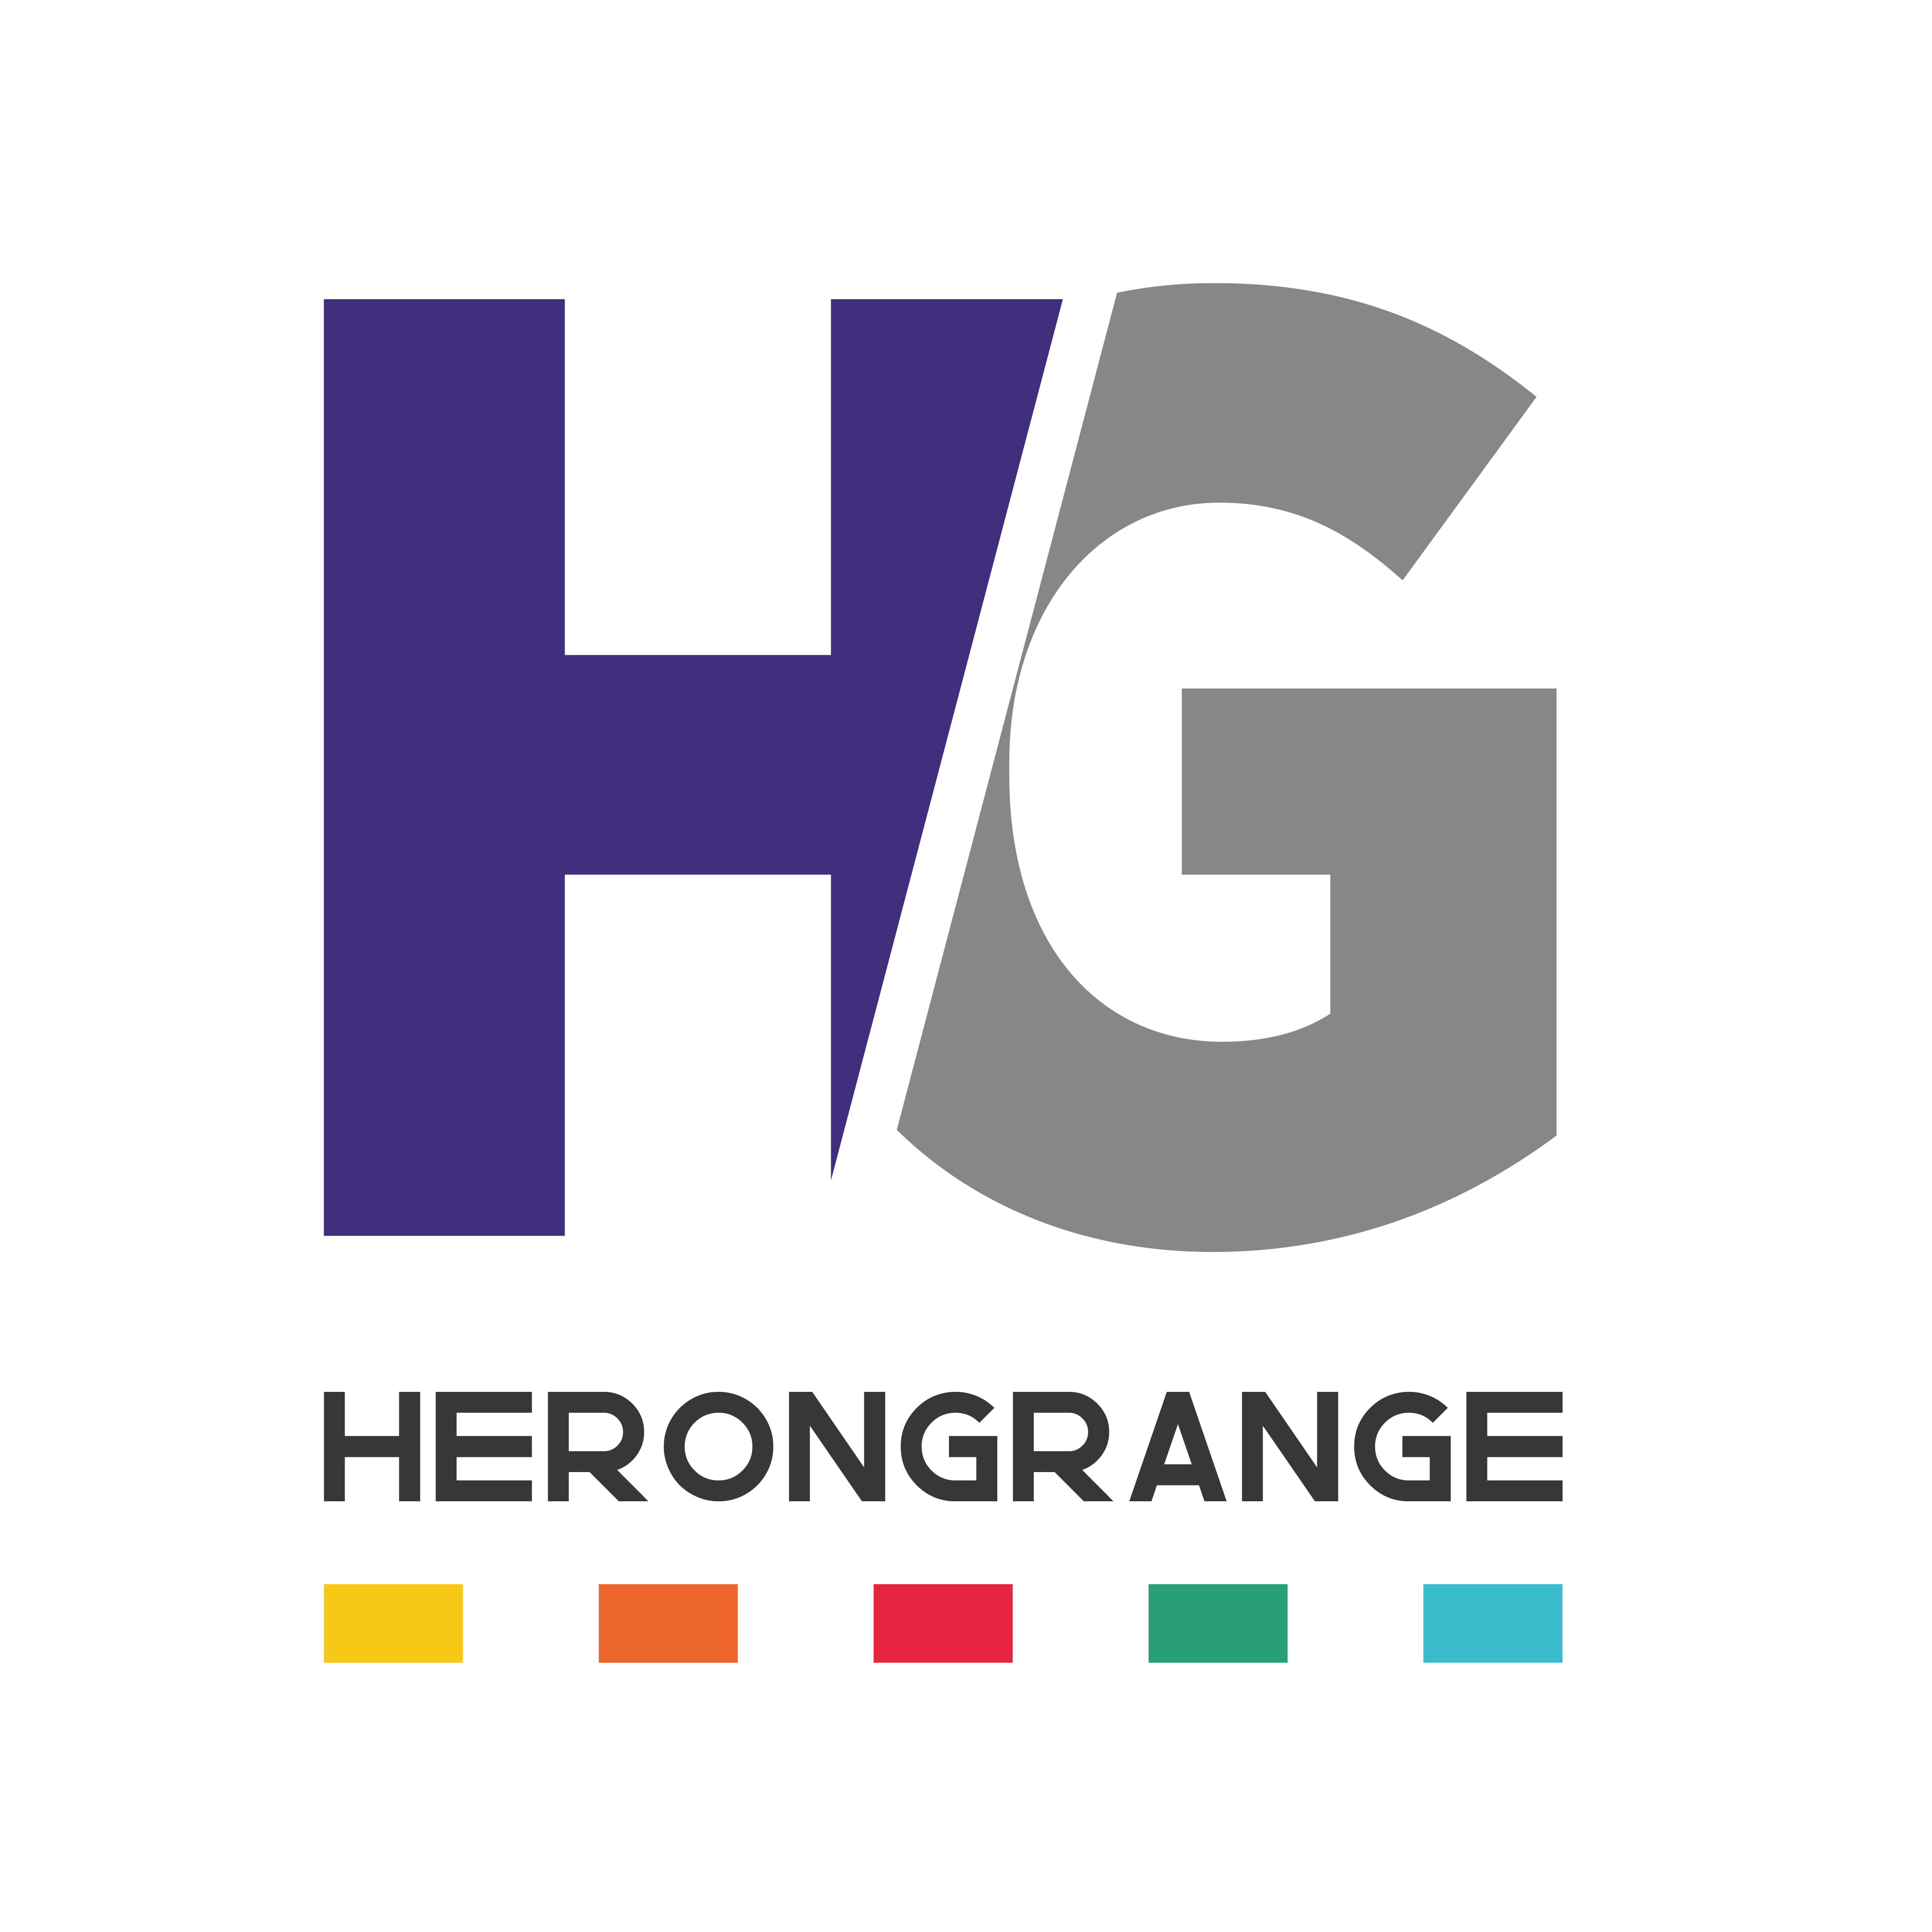 Herongrange logos-Group